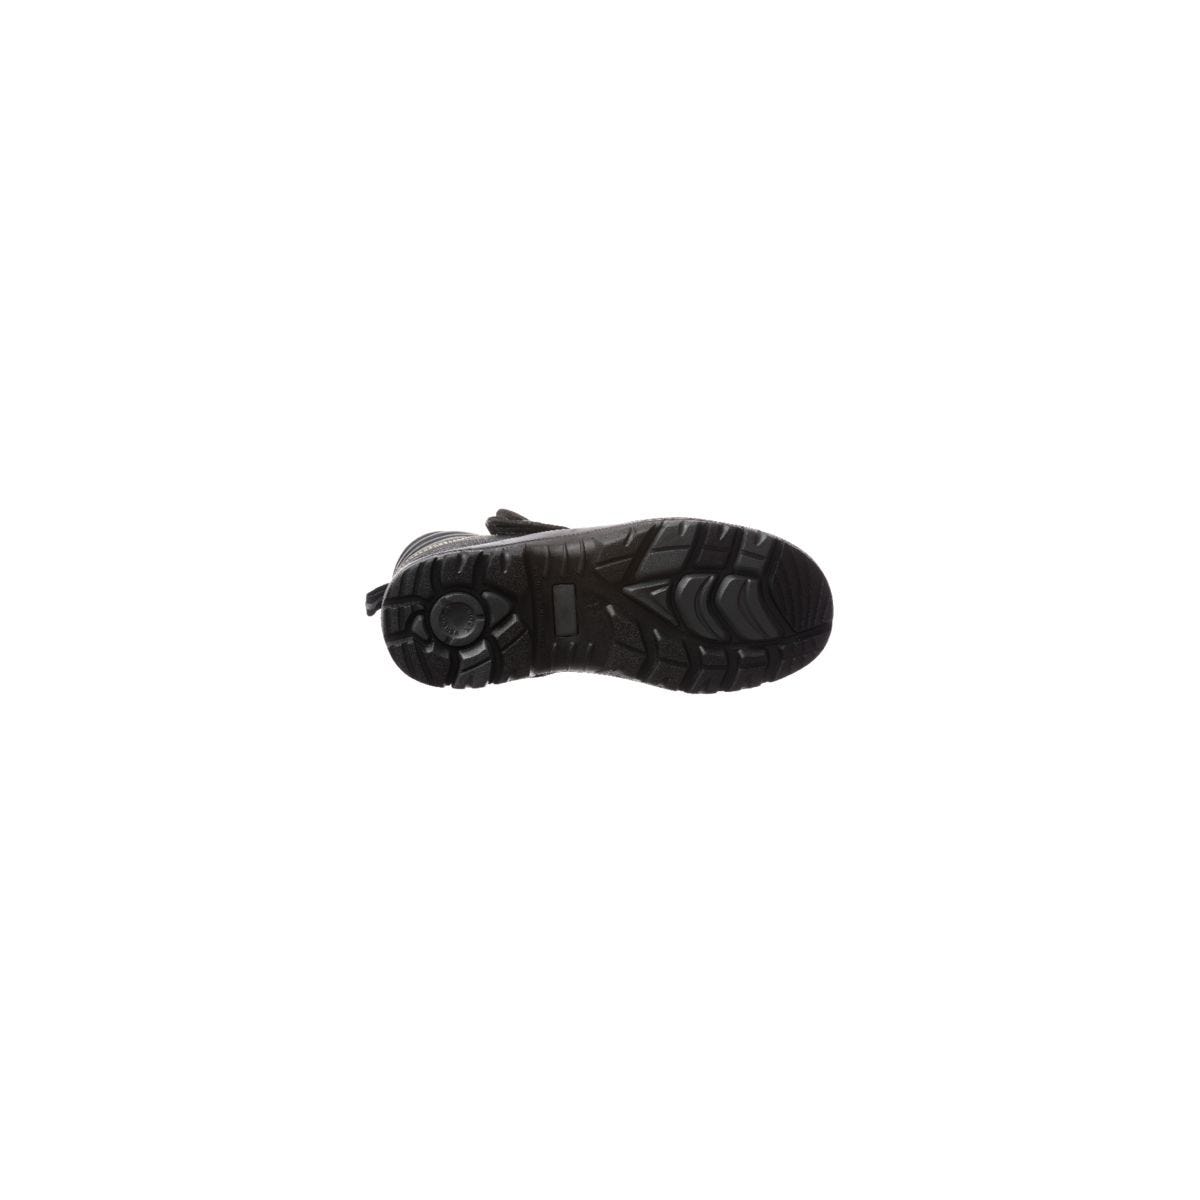 Chaussure de sécurité QANDILITE S3 SRC HRO soudeur composite - COVERGUARD - Taille 39 1